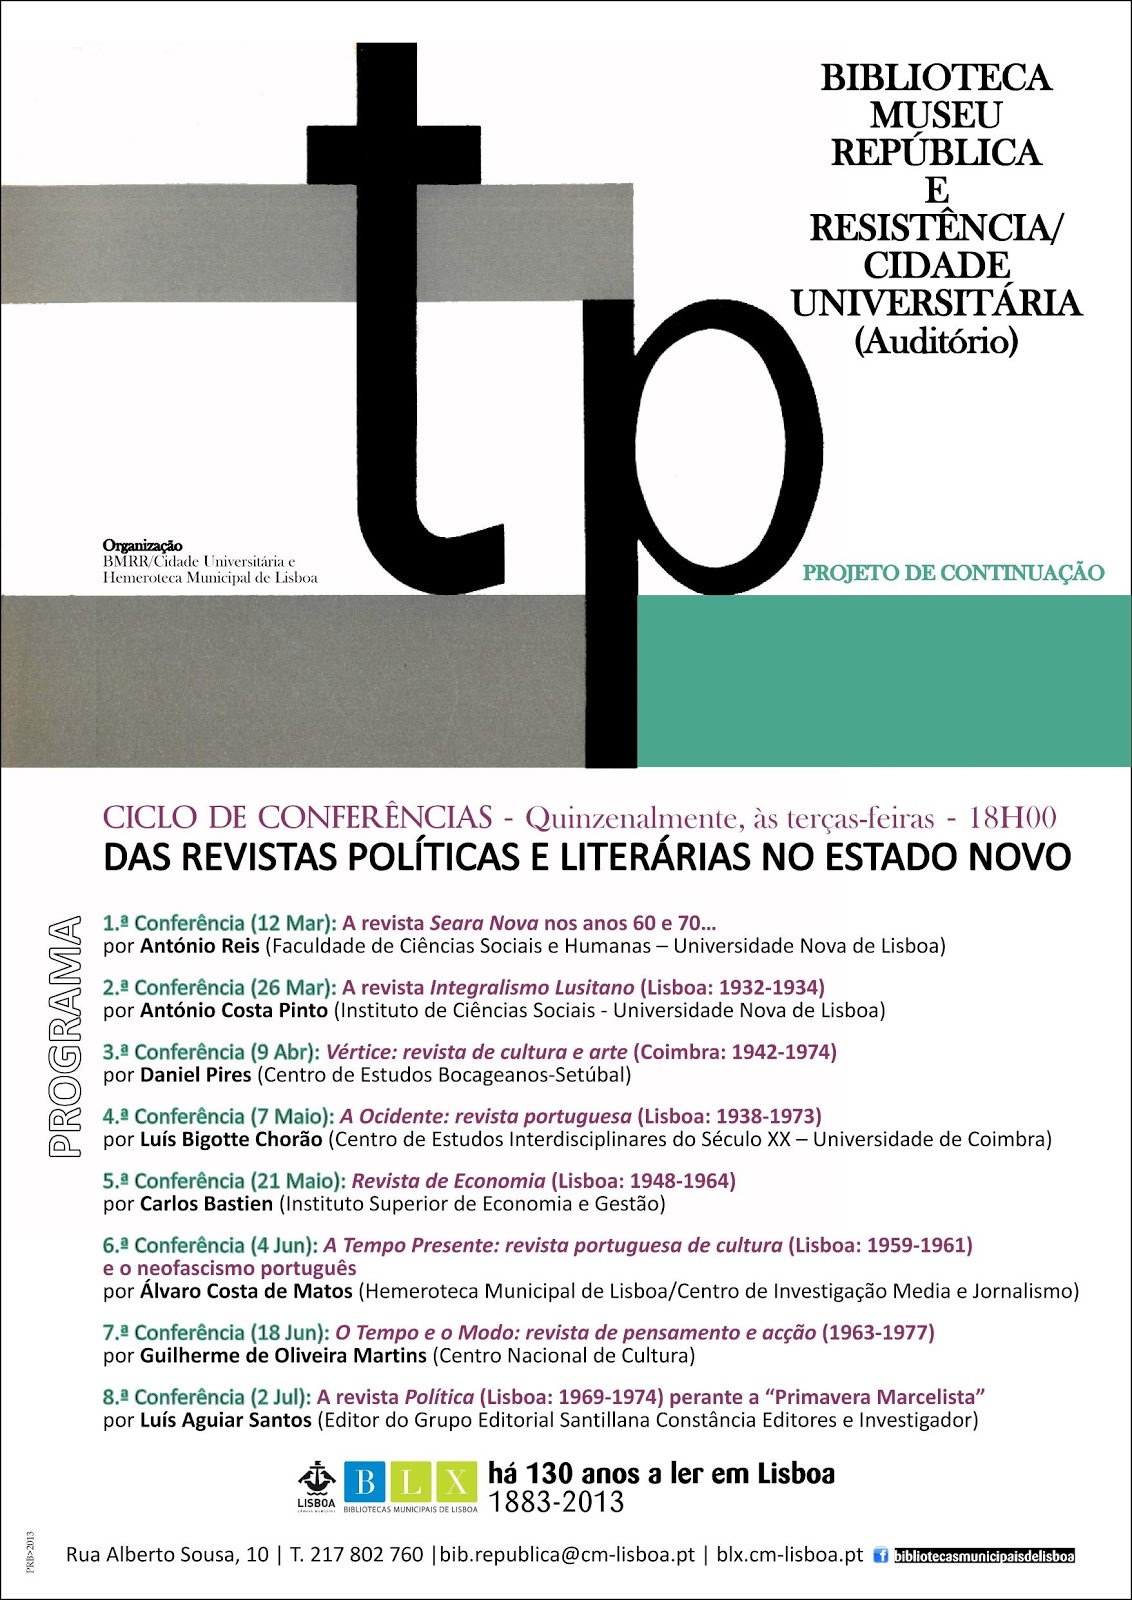 Revistas Politicas Literarias Estado Novo_Ciclo conferencias_BMRR_Hemeroteca LX